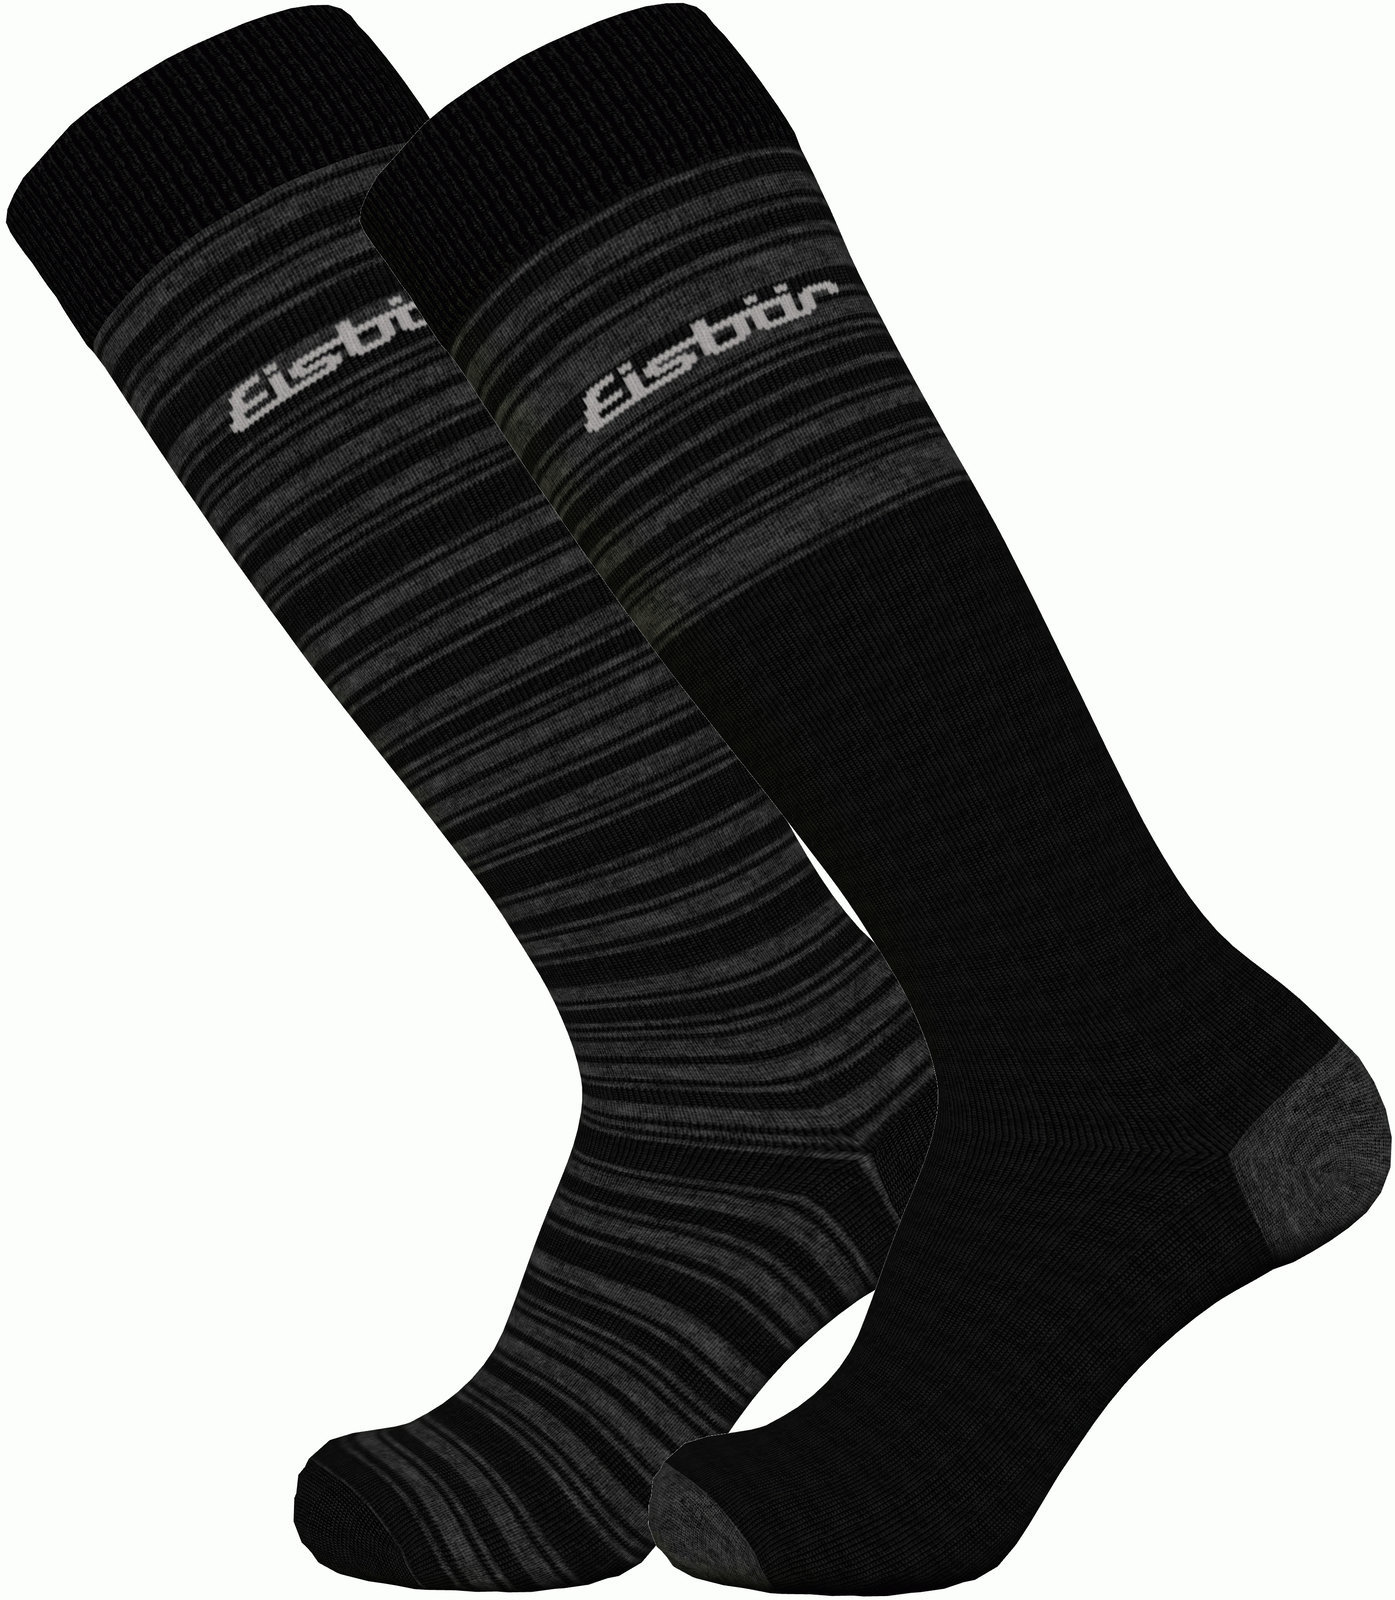 Ski Socken Eisbär Ski Comfort 2 Pack Black/Grey 35-38